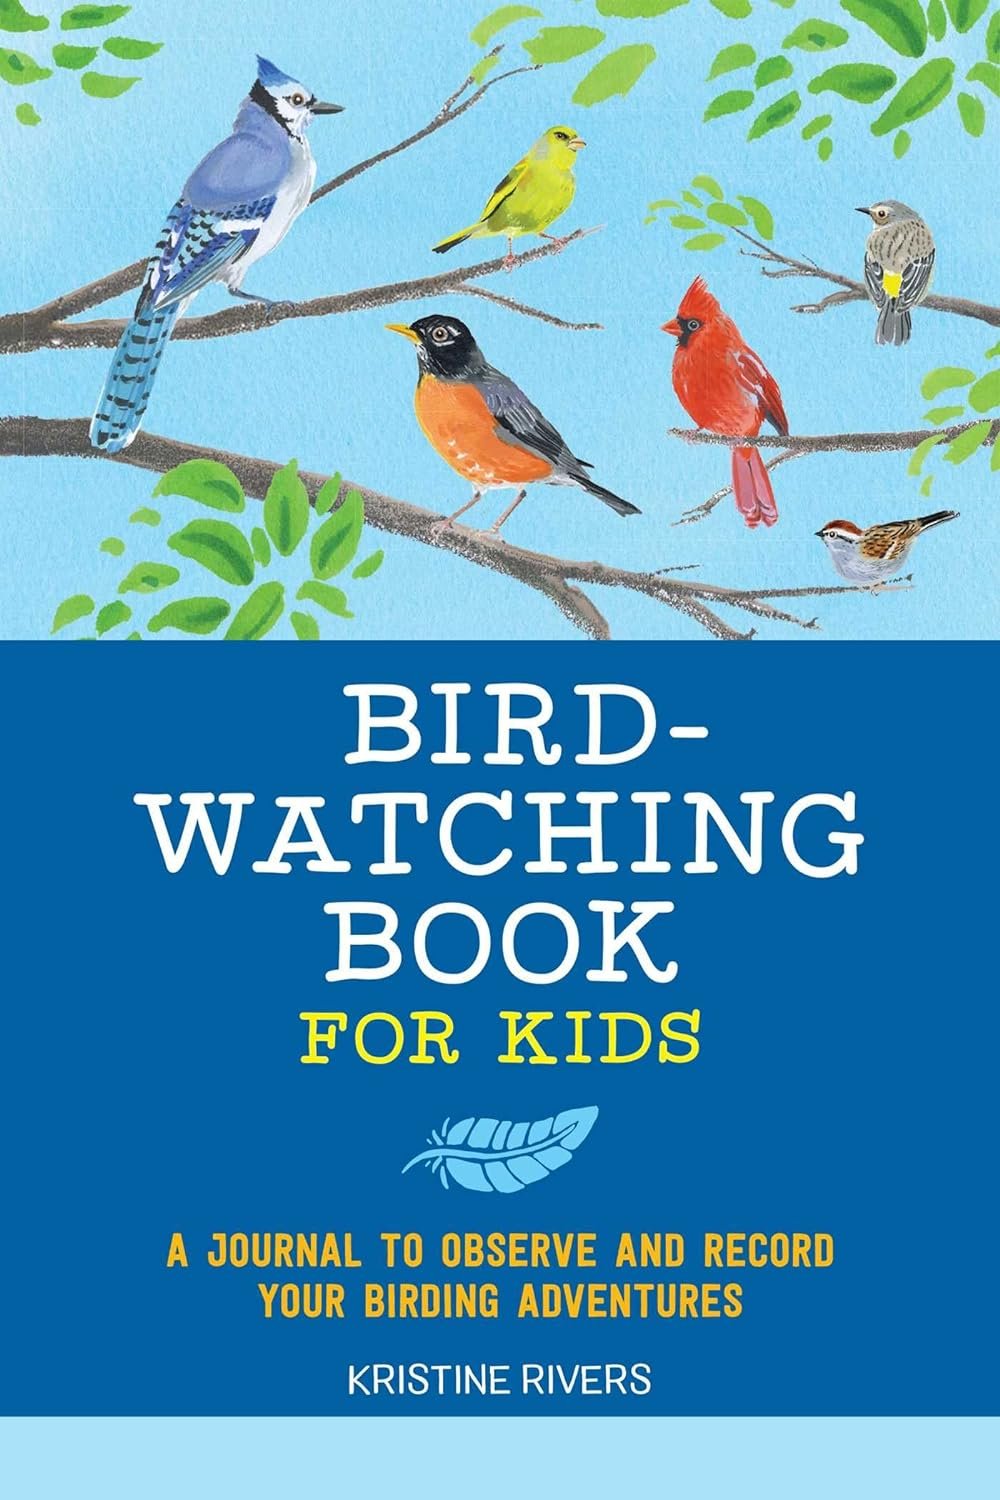 A First Bird Watching Book